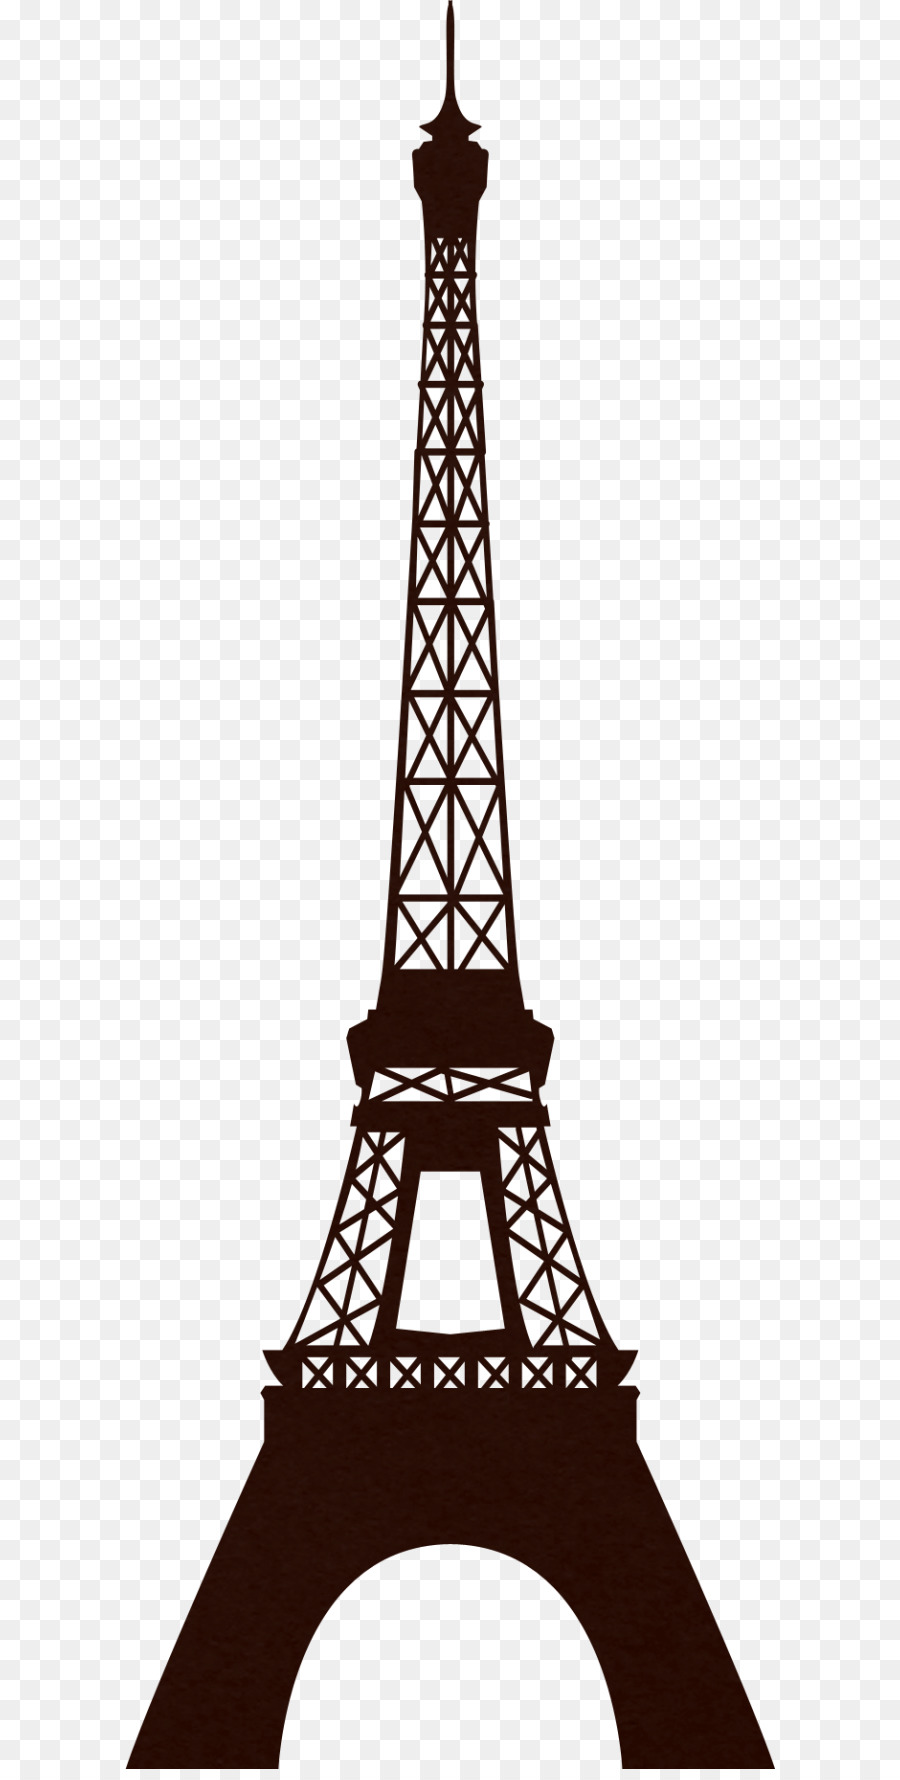 Eiffel Tower Silhouette Clip art - Paris png download - 650*1769 - Free Transparent Eiffel Tower png Download.